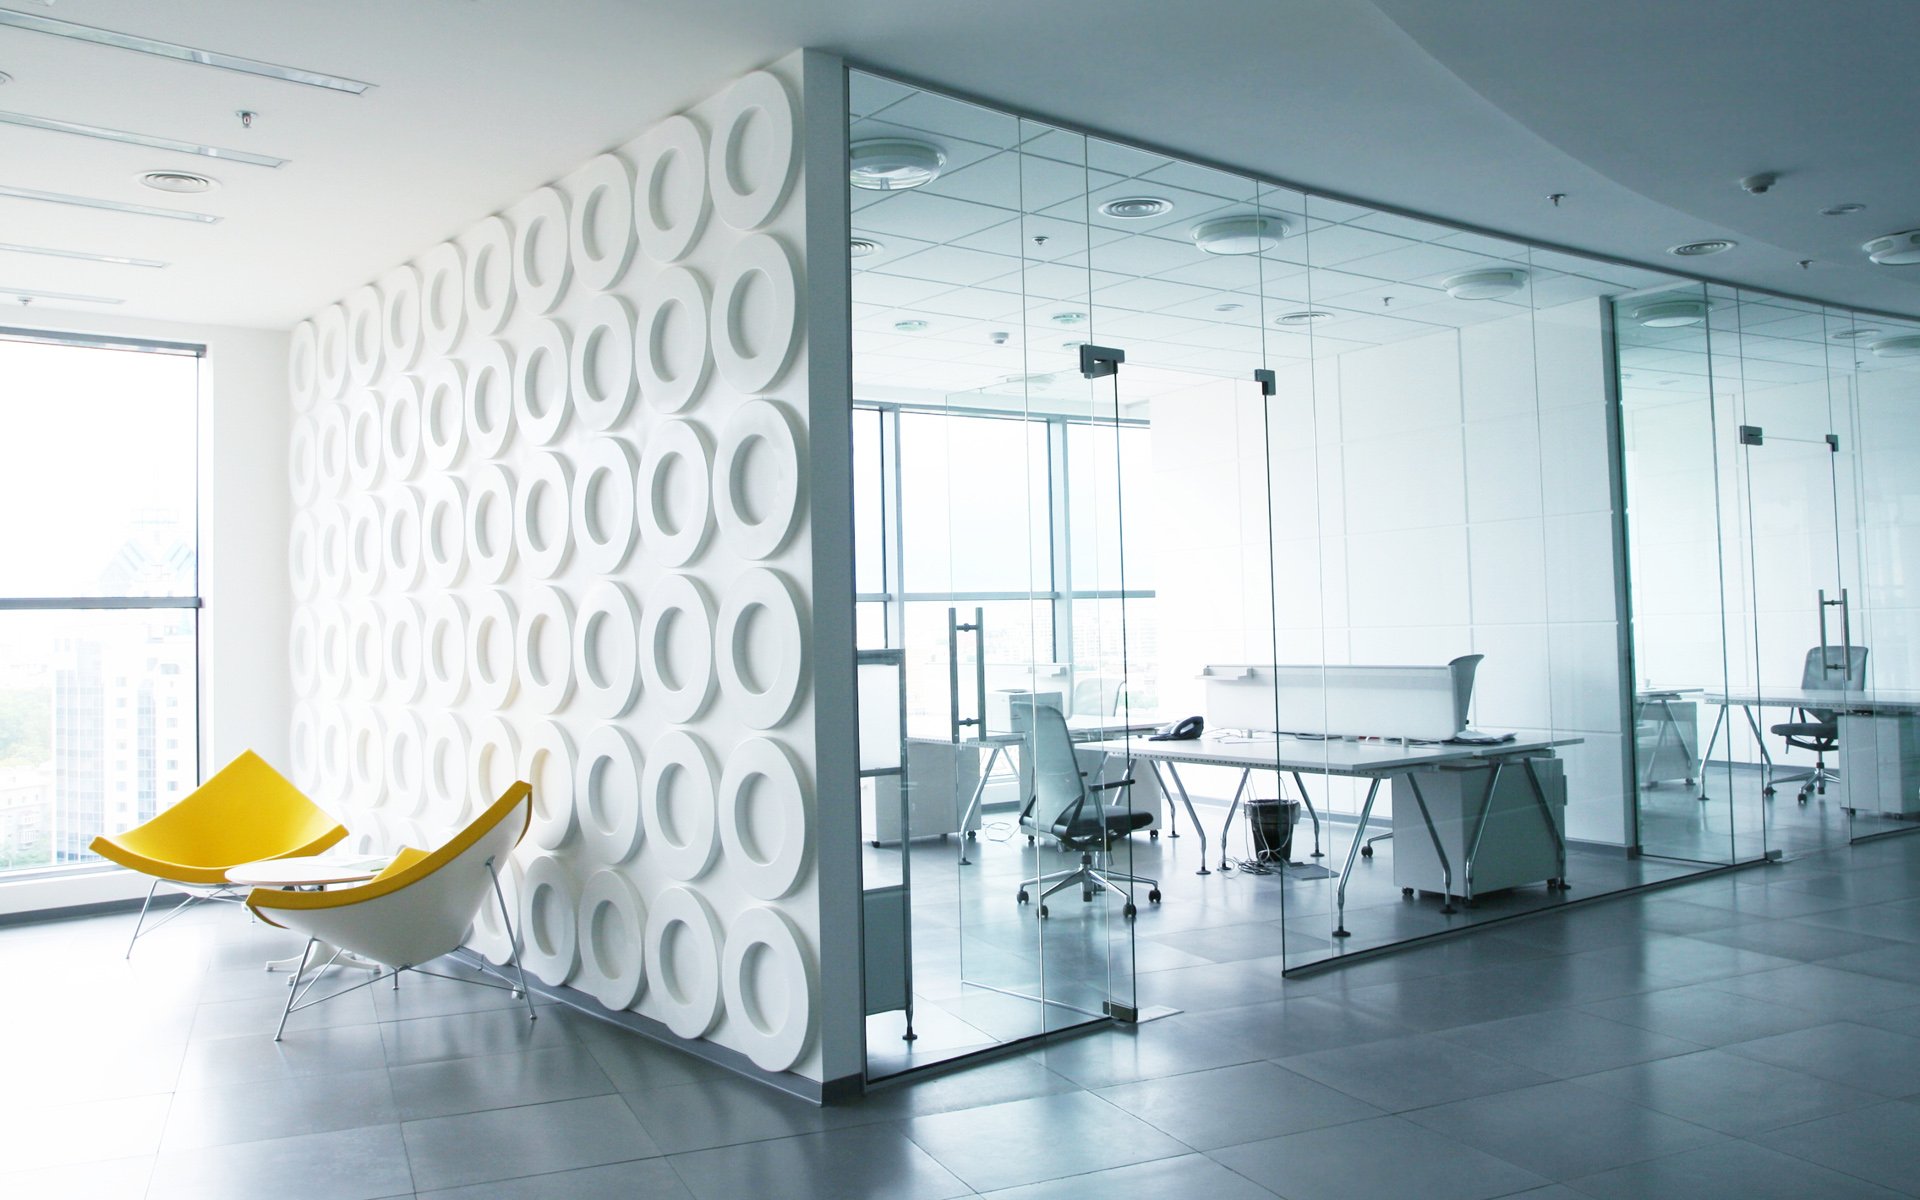 Thiết kế nội thất văn phòng giúp tạo ra không gian làm việc hiện đại và tiện nghi. Bạn sẽ được trải nghiệm không gian mở, sáng nhưng không kém phần ấm cúng. Chỉ cần một bàn làm việc và một chiếc ghế êm ái, bạn sẽ cảm thấy thoải mái để tiếp tục công việc của mình.